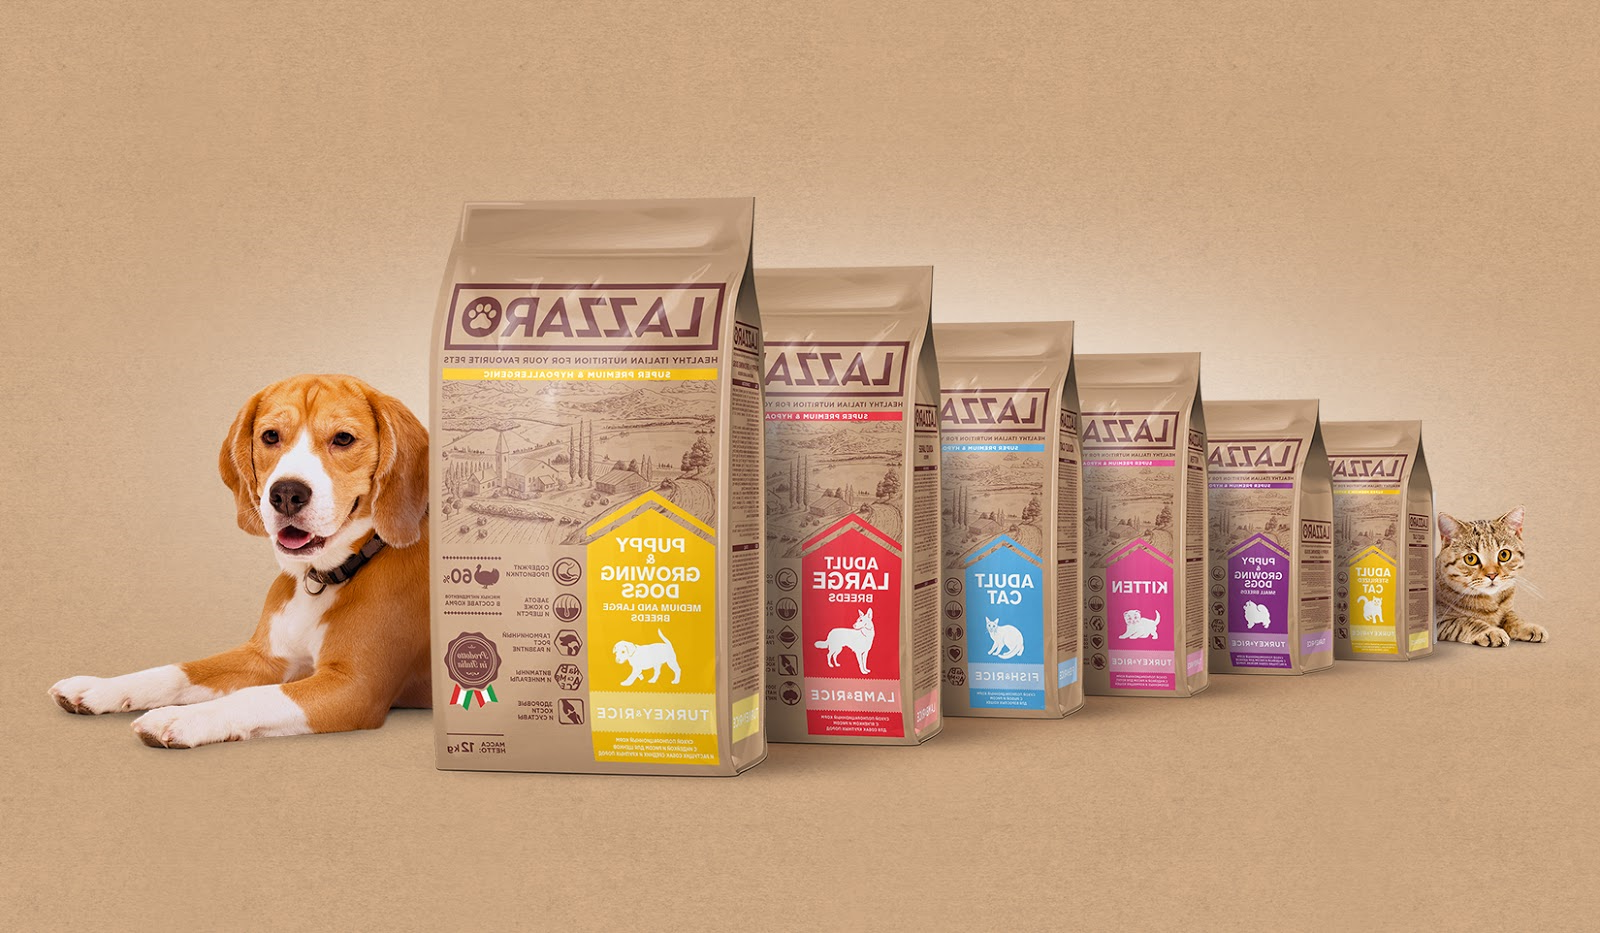 宠物包装设计欣赏食品LAZZARO品牌包装设计参考(图4)